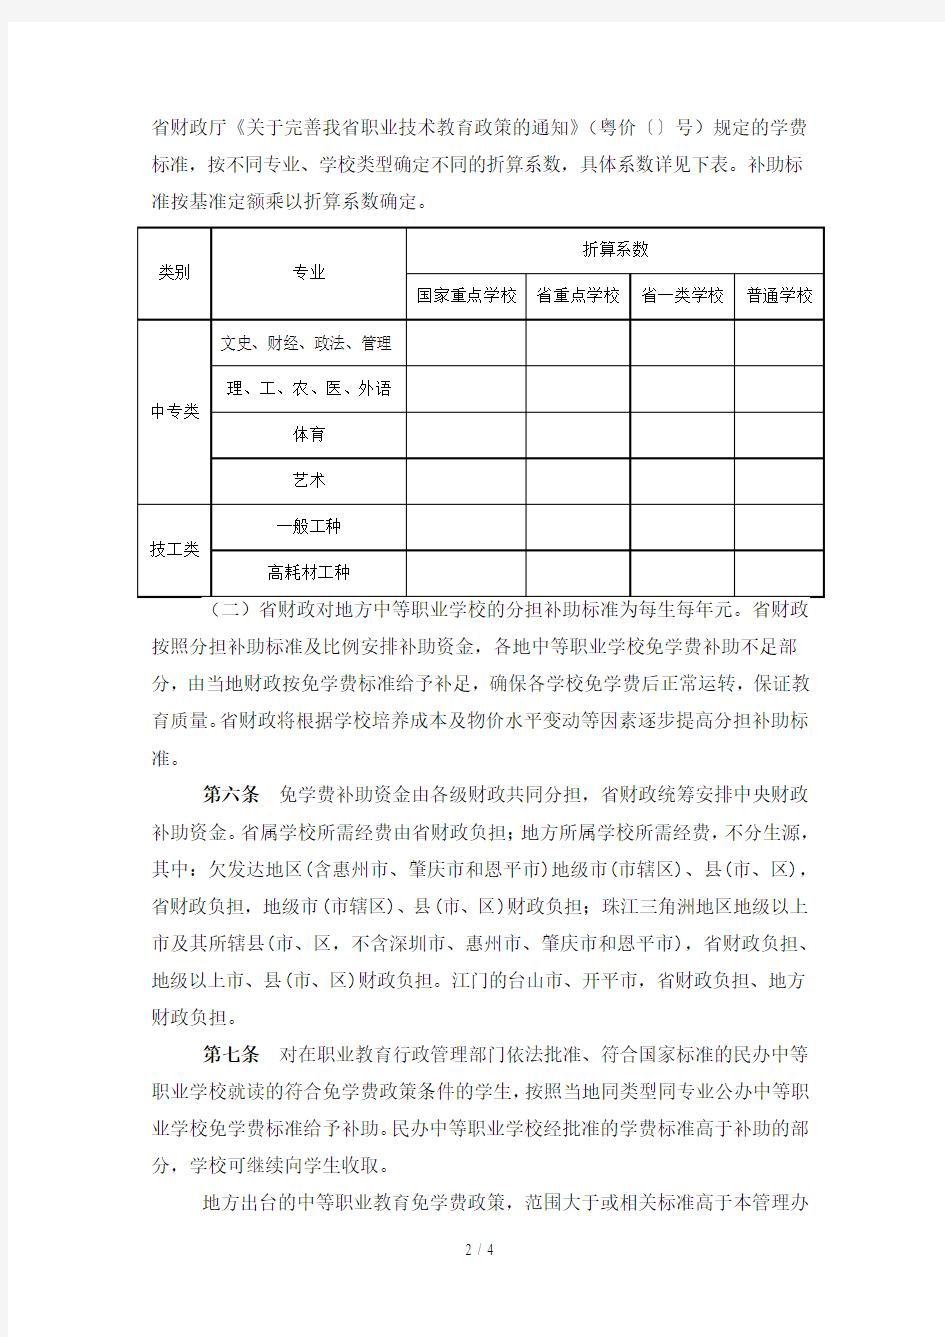 广东省中等职业学校免学费补助资金管理办法